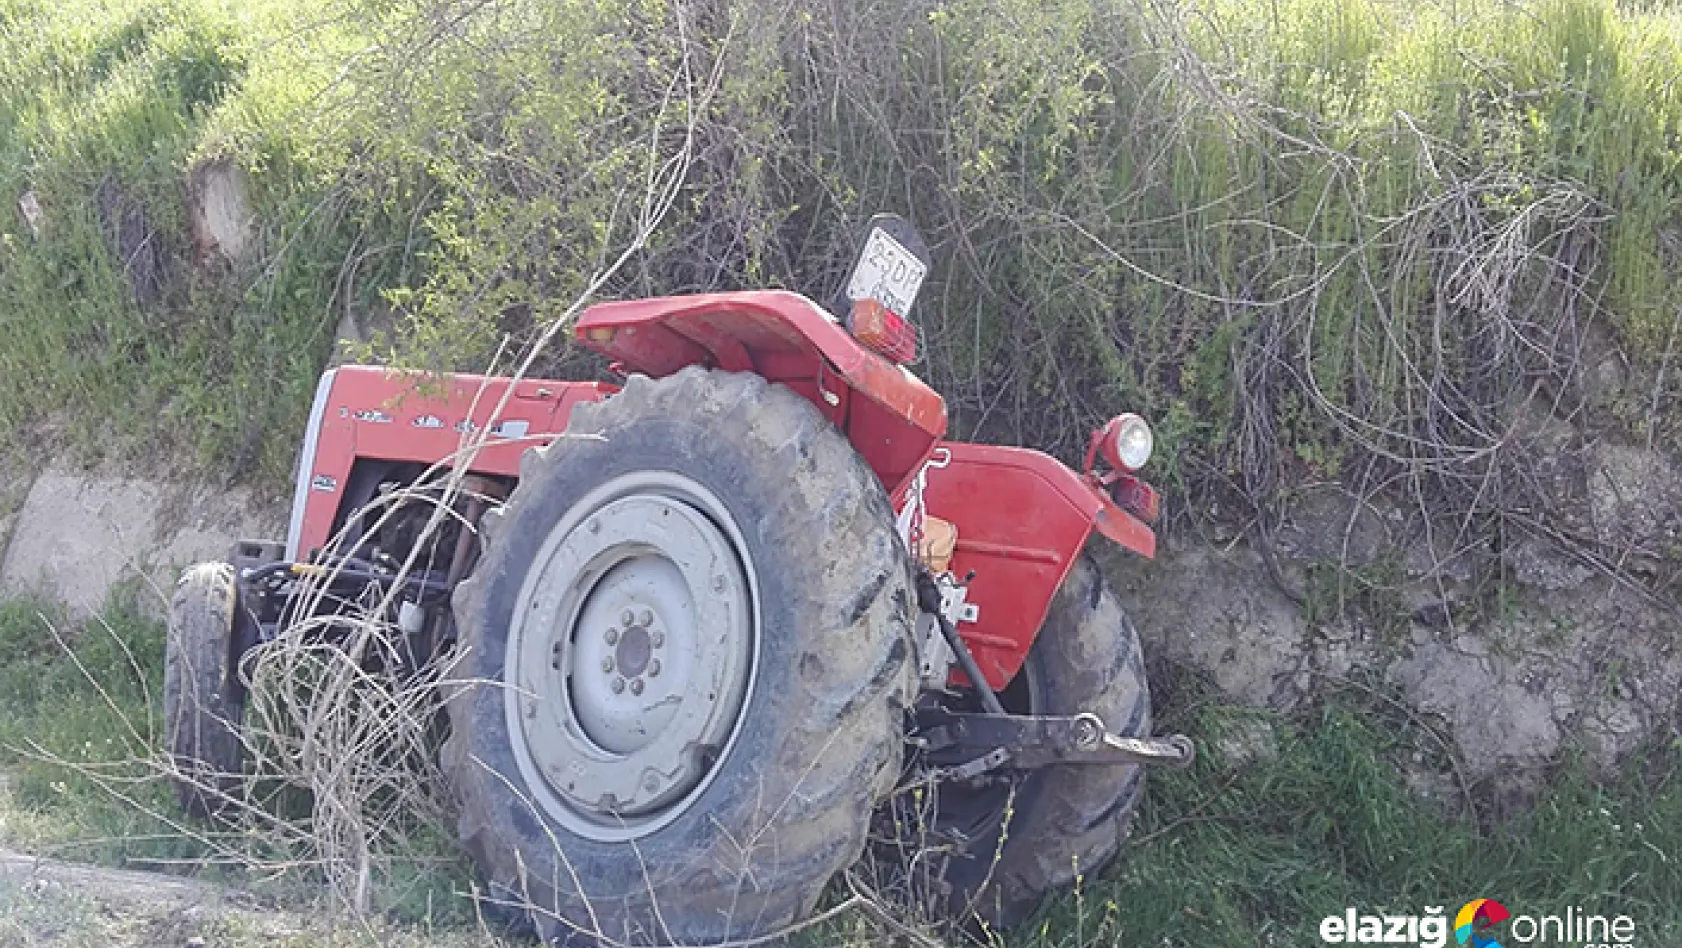 Elazığ'da traktör kazası: 1 ölü, 1 yaralı